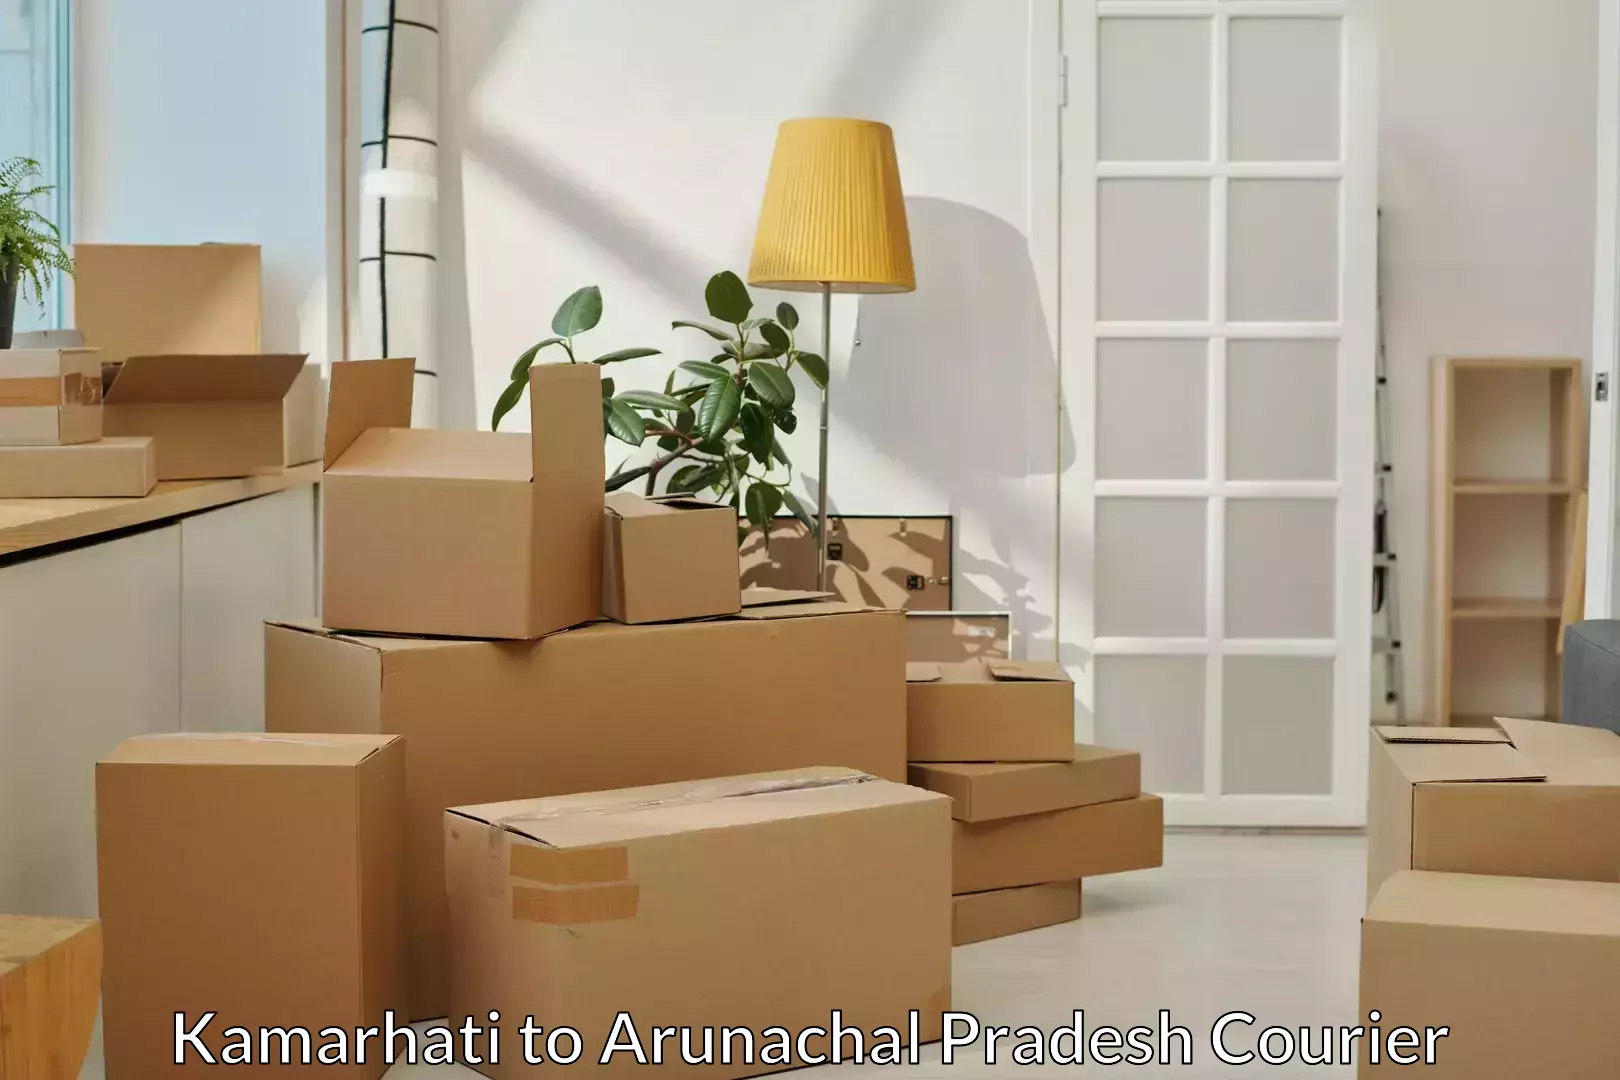 Furniture moving experts Kamarhati to Arunachal Pradesh